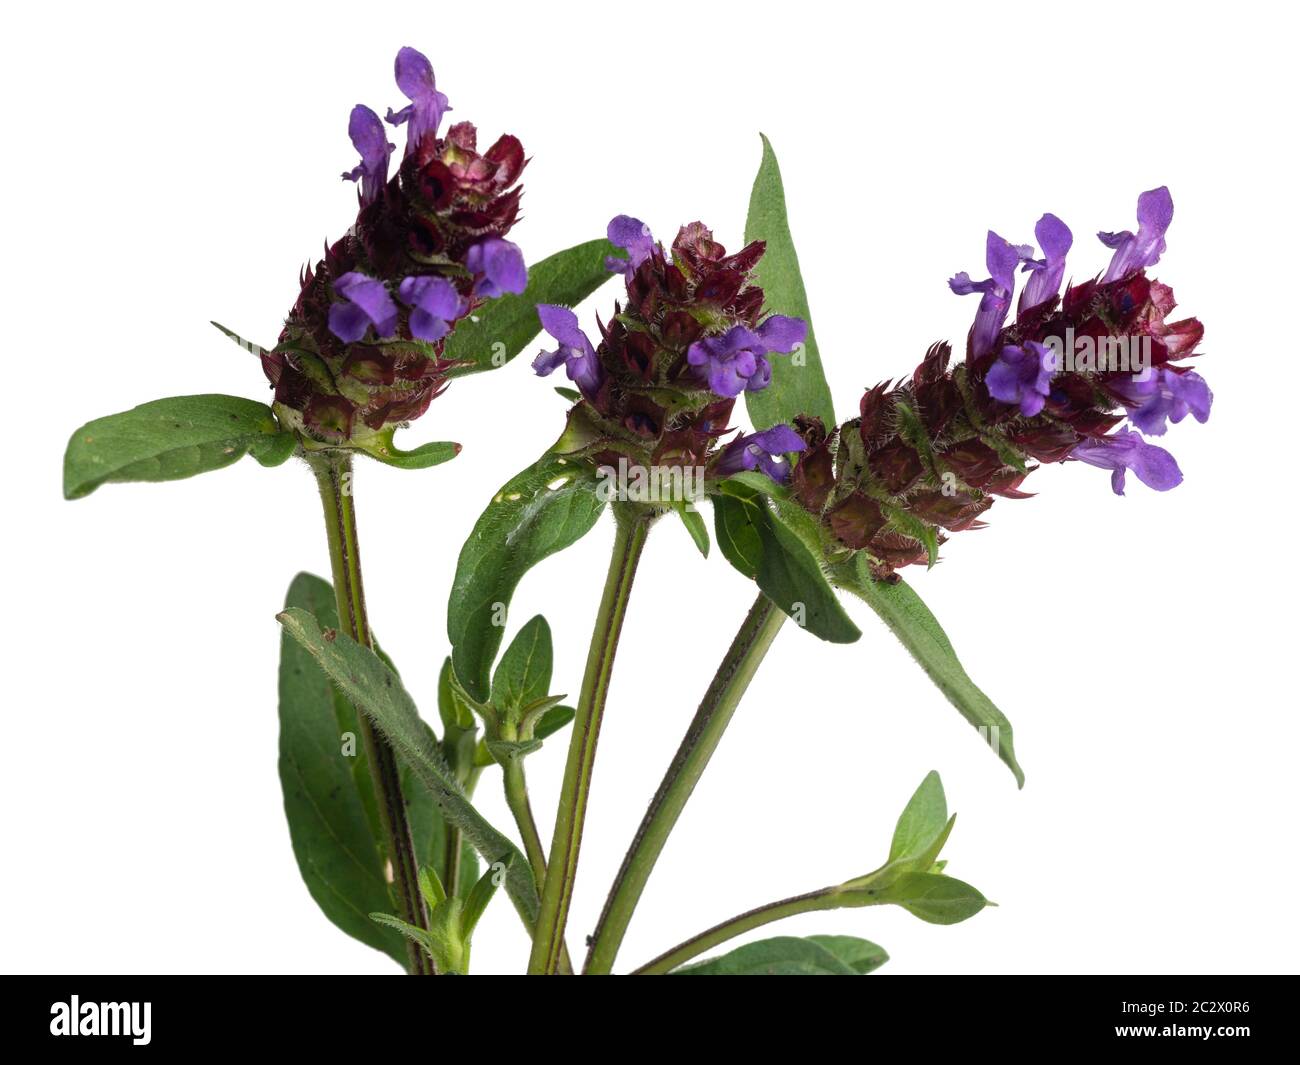 Violett-blaue Blüten der sommerblühenden UK Wildblume, Prunella vulgaris, self heal, auf weißem Hintergrund Stockfoto